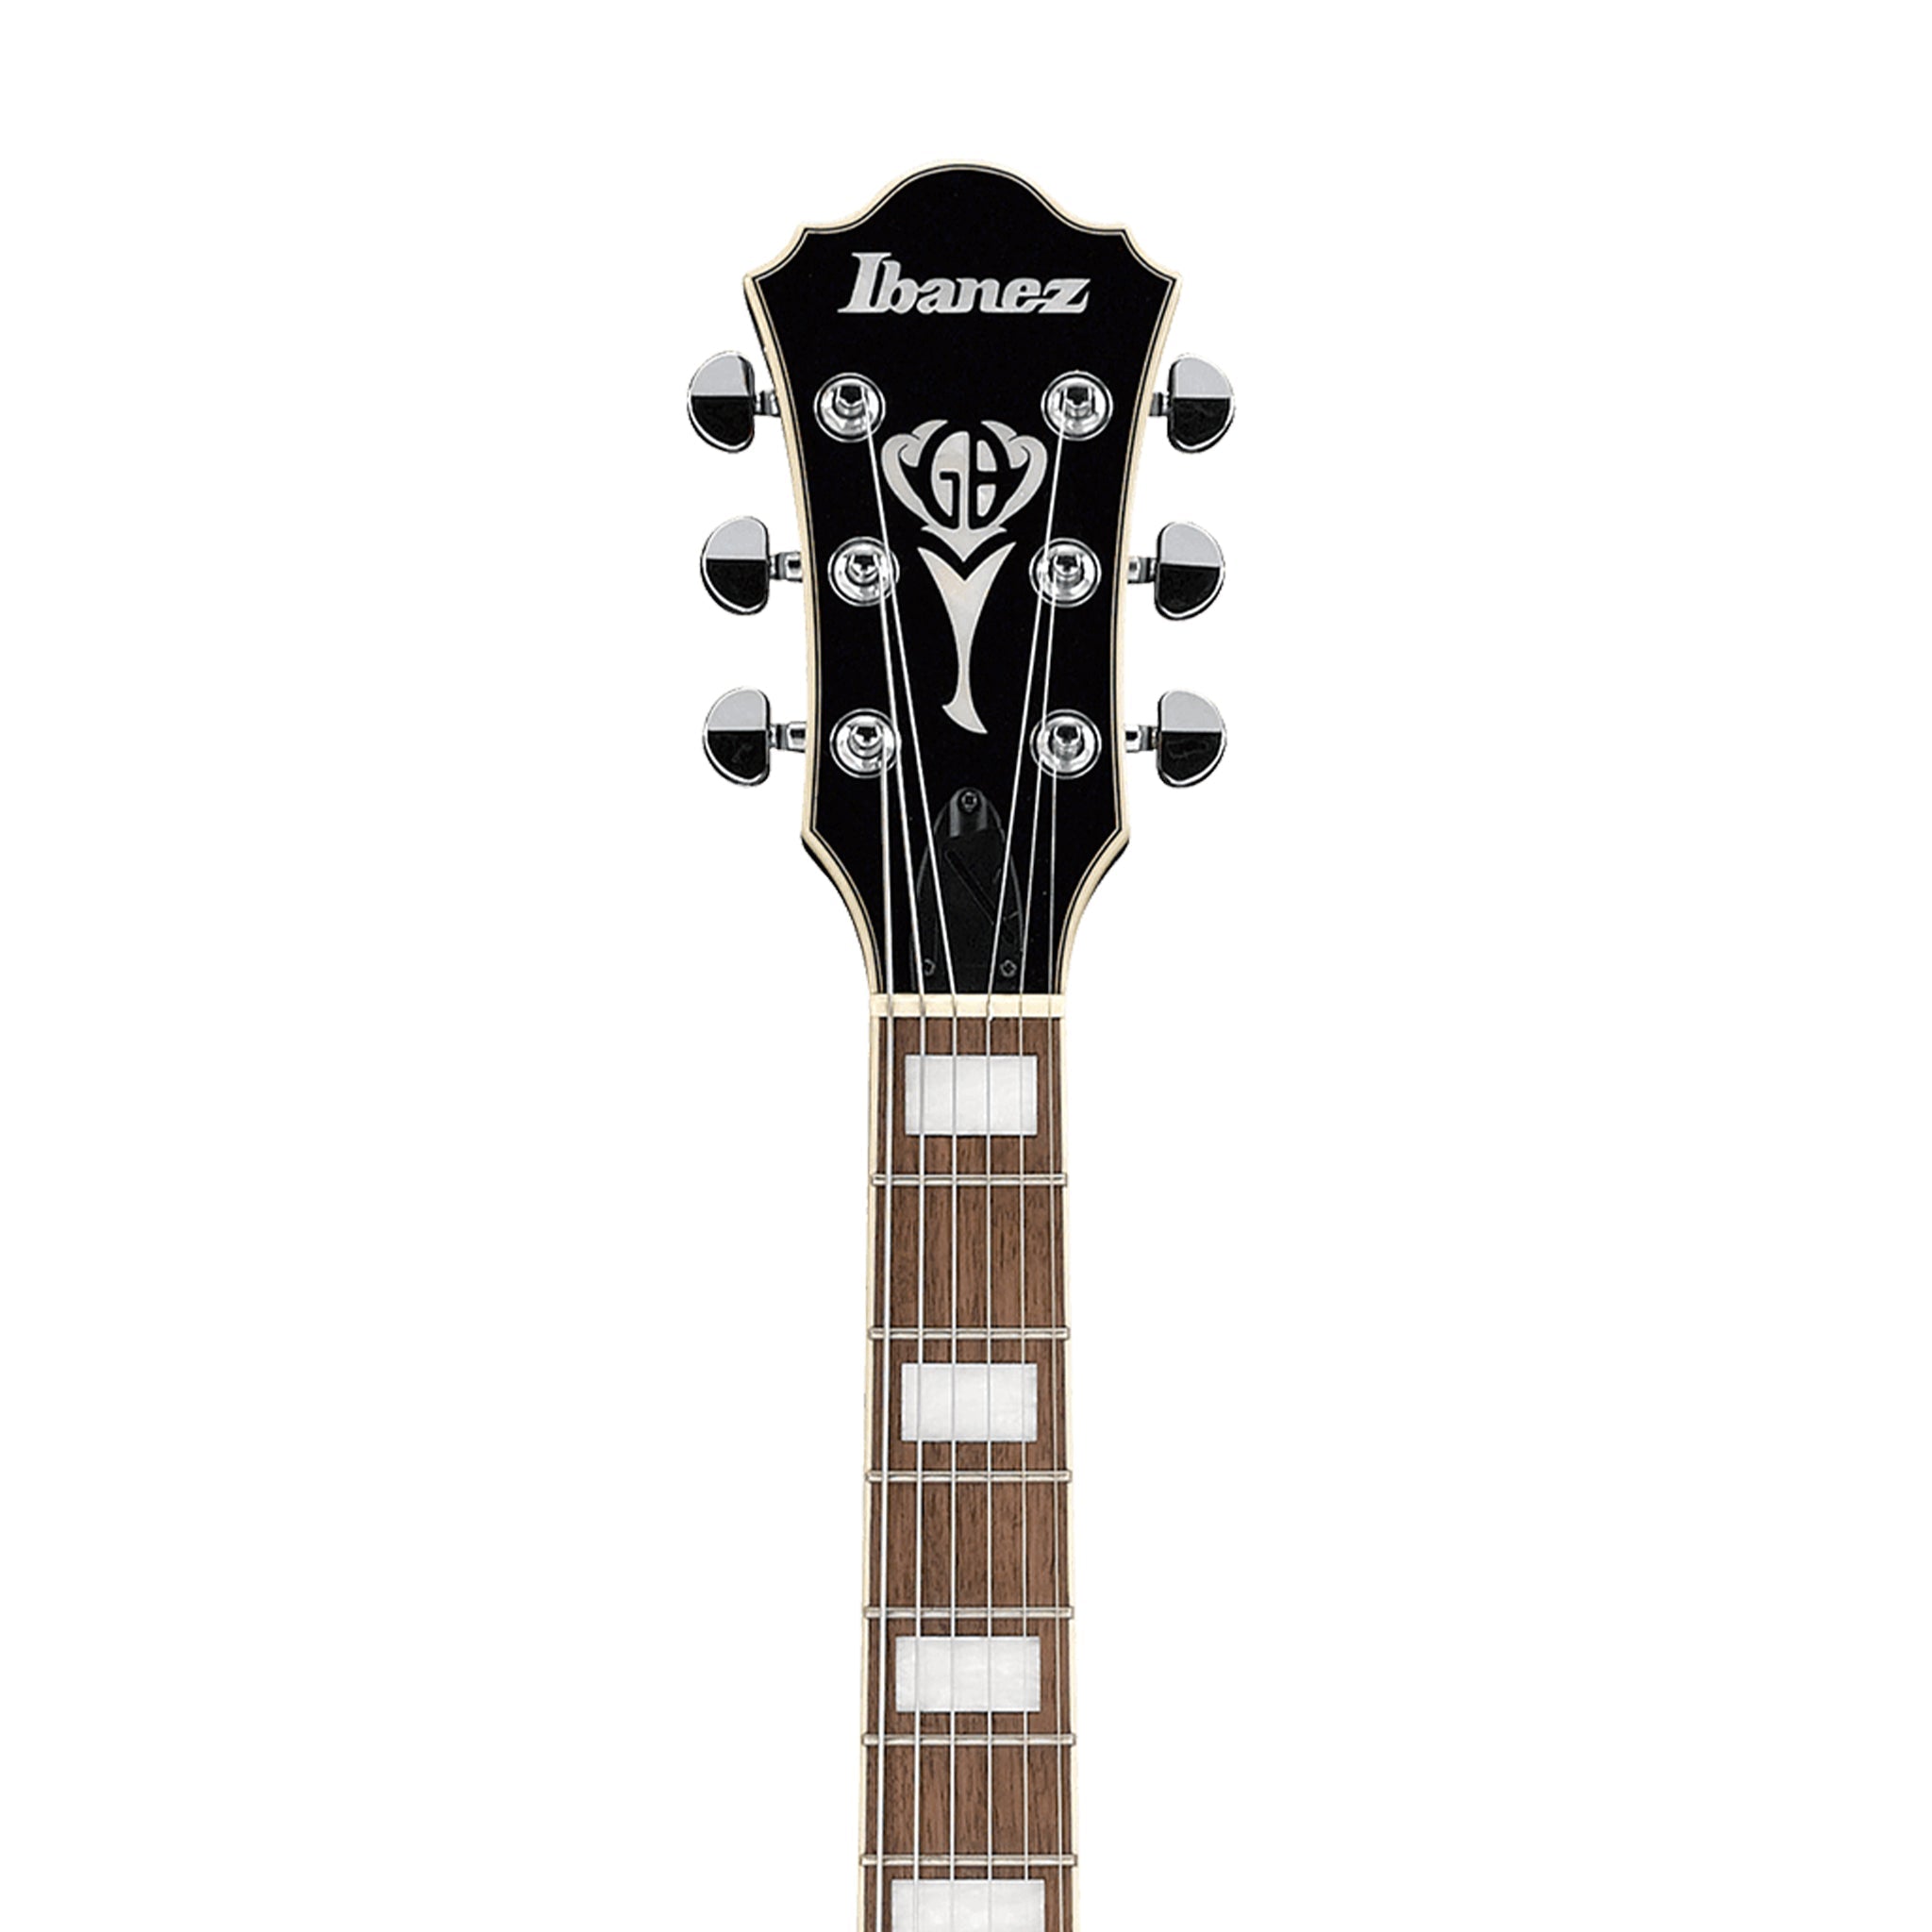 Ibanez George Benson Signature GB10EM Electric Guitar - Antique Amber